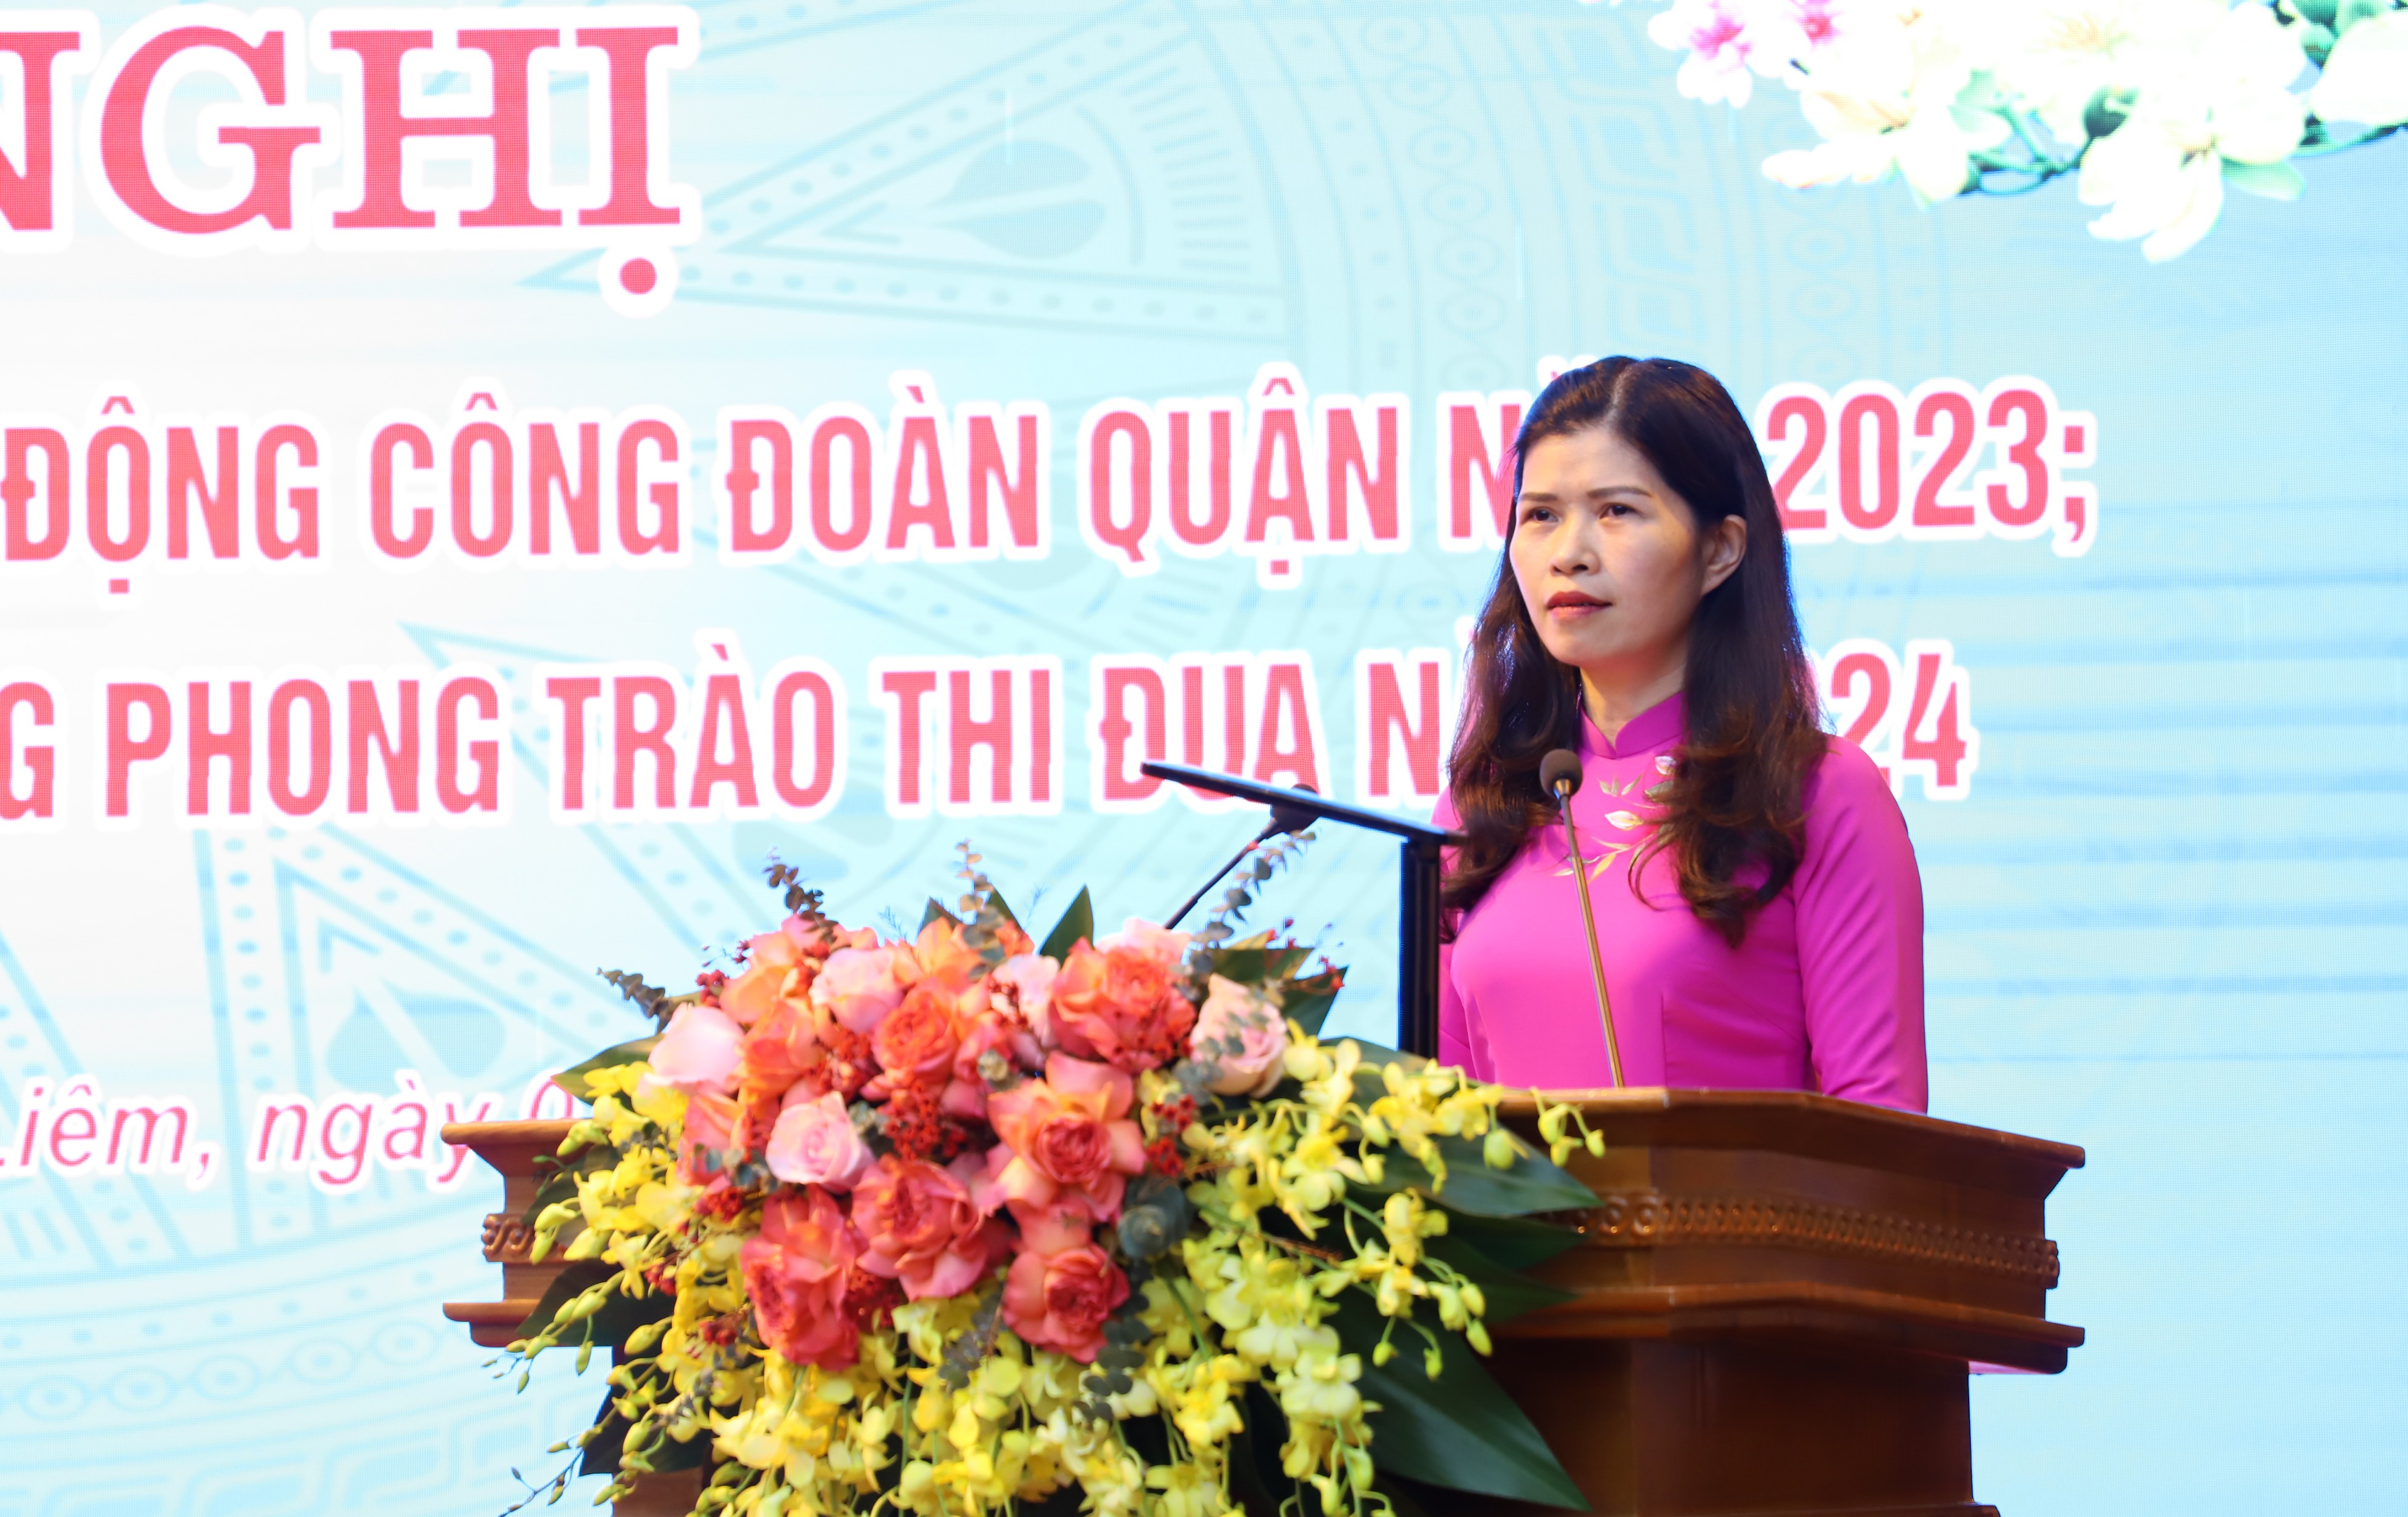 LĐLĐ quận Nam Từ Liêm được Tổng LĐLĐ Việt Nam tặng Cờ đơn vị xuất sắc